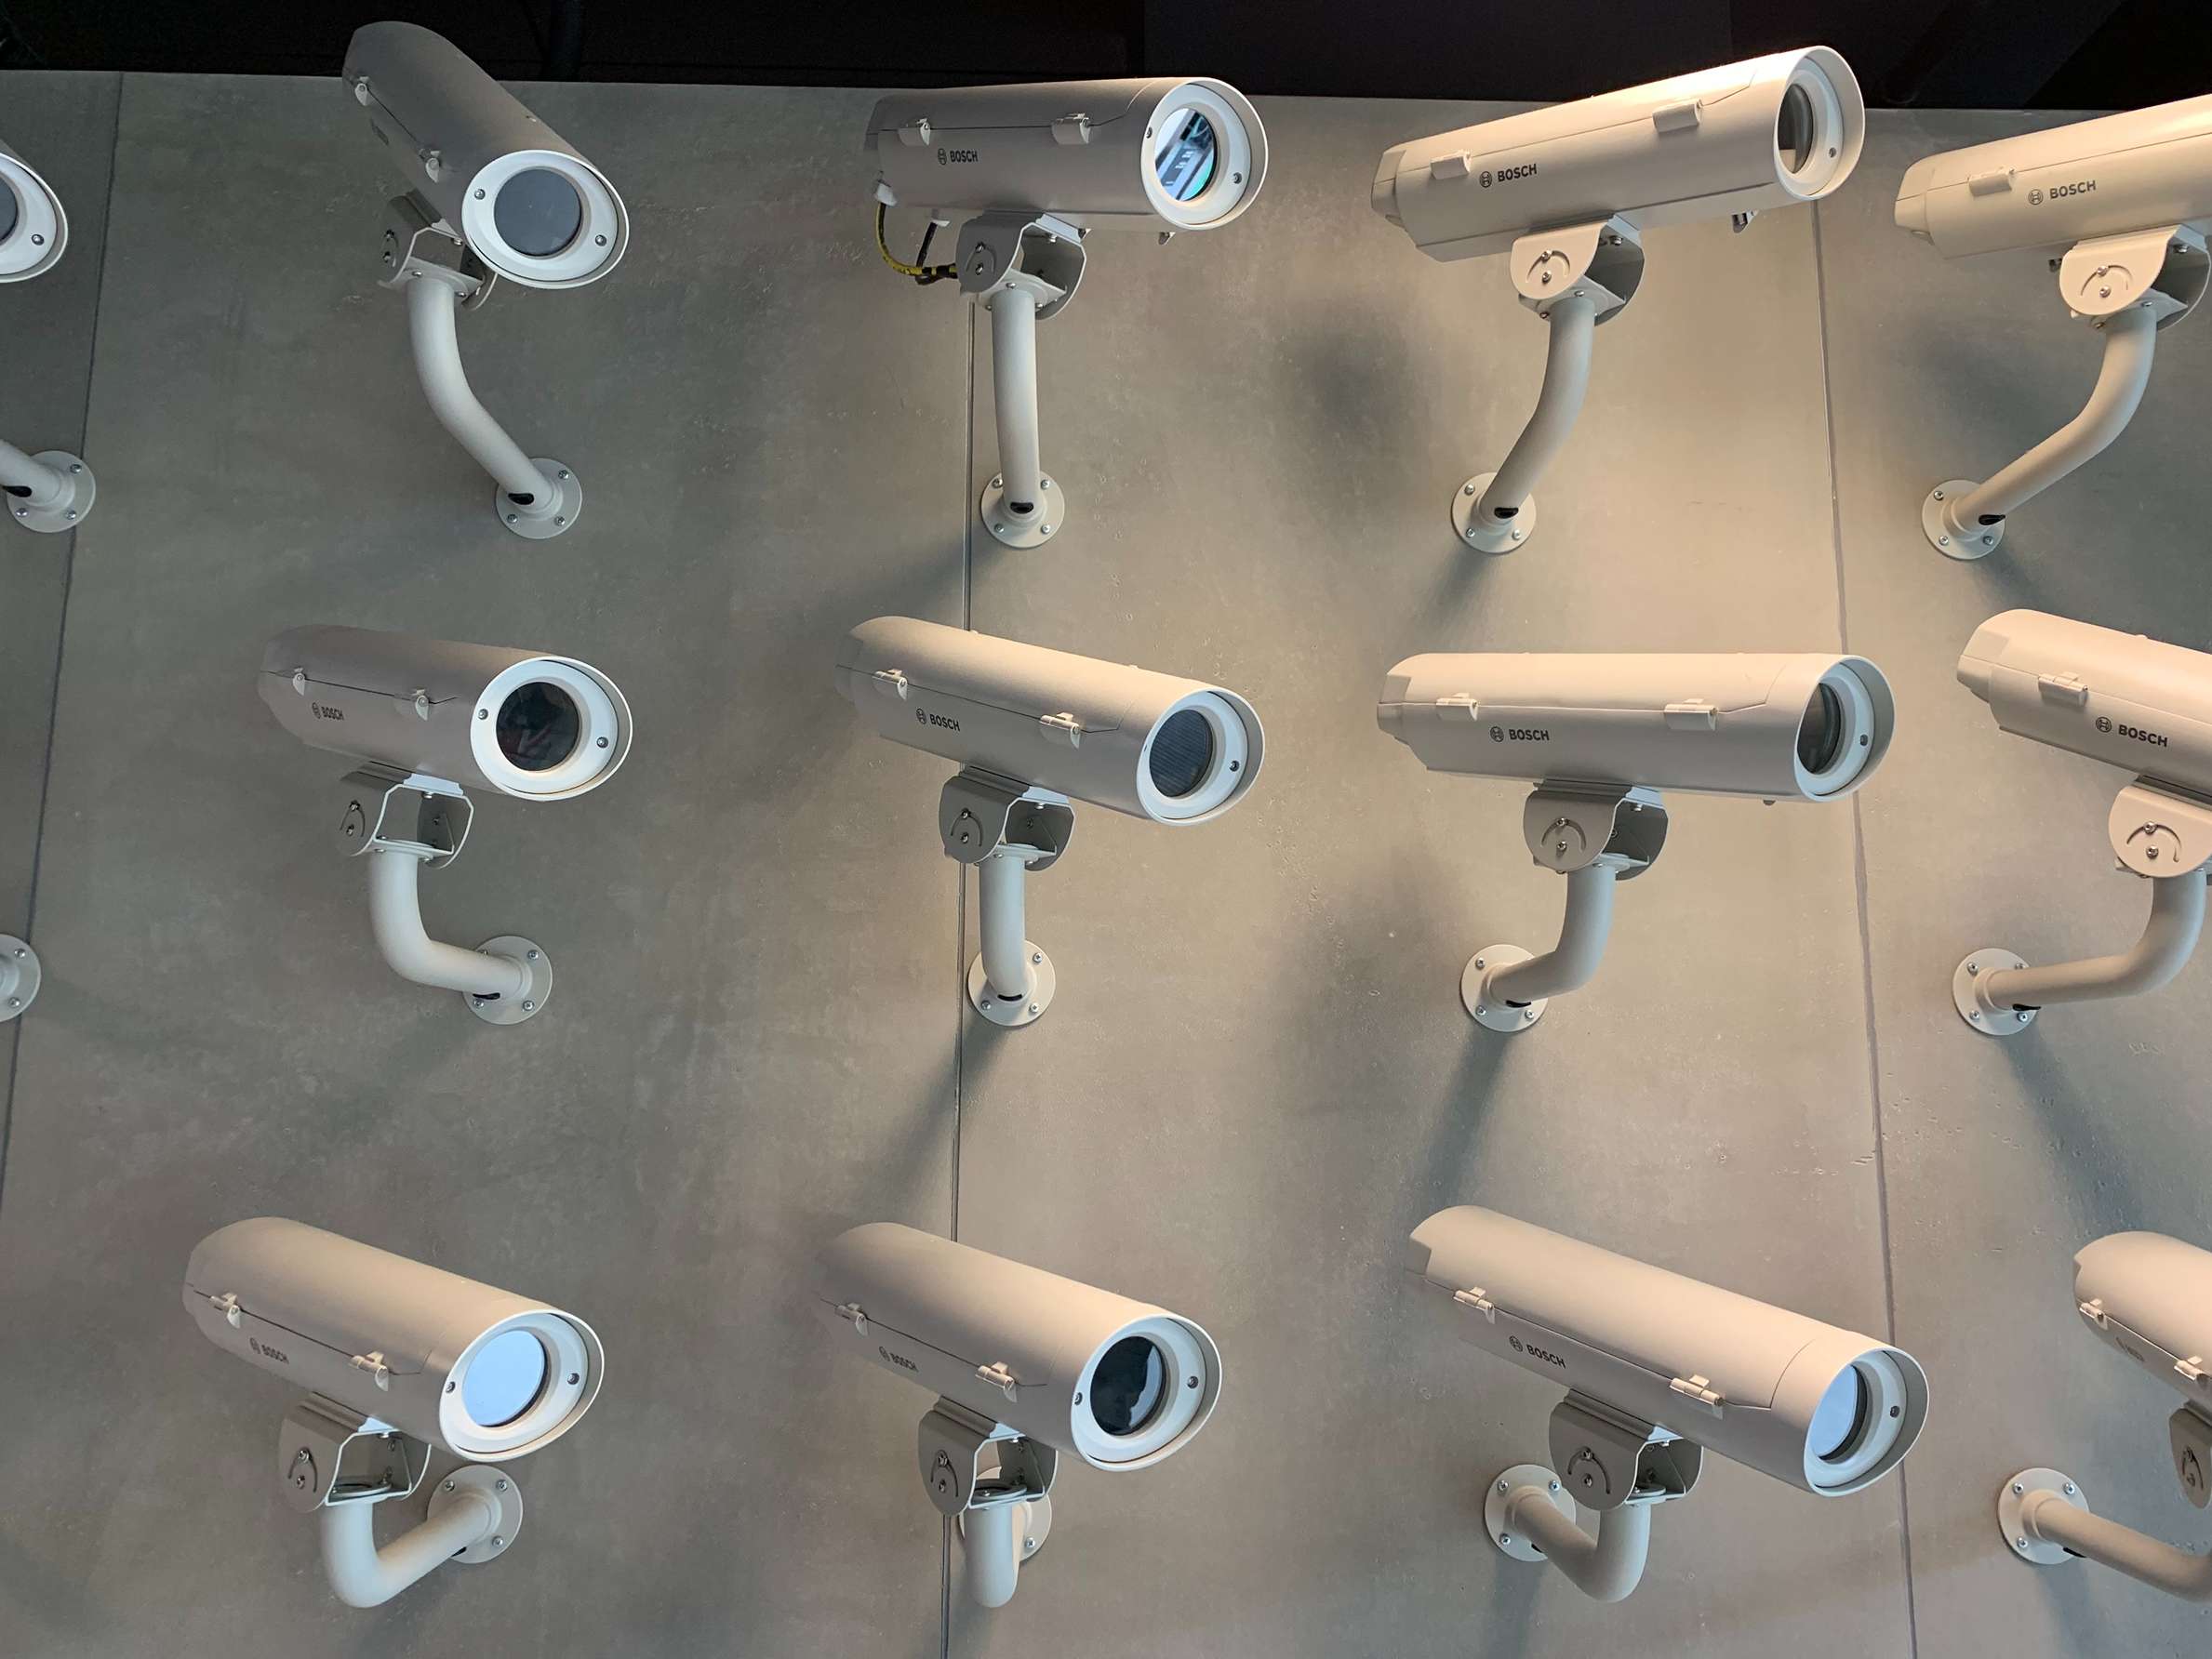 10 CCTV Terbaik Tanpa Kabel yang Bisa Anda Beli, Sangat Rekomendasi!